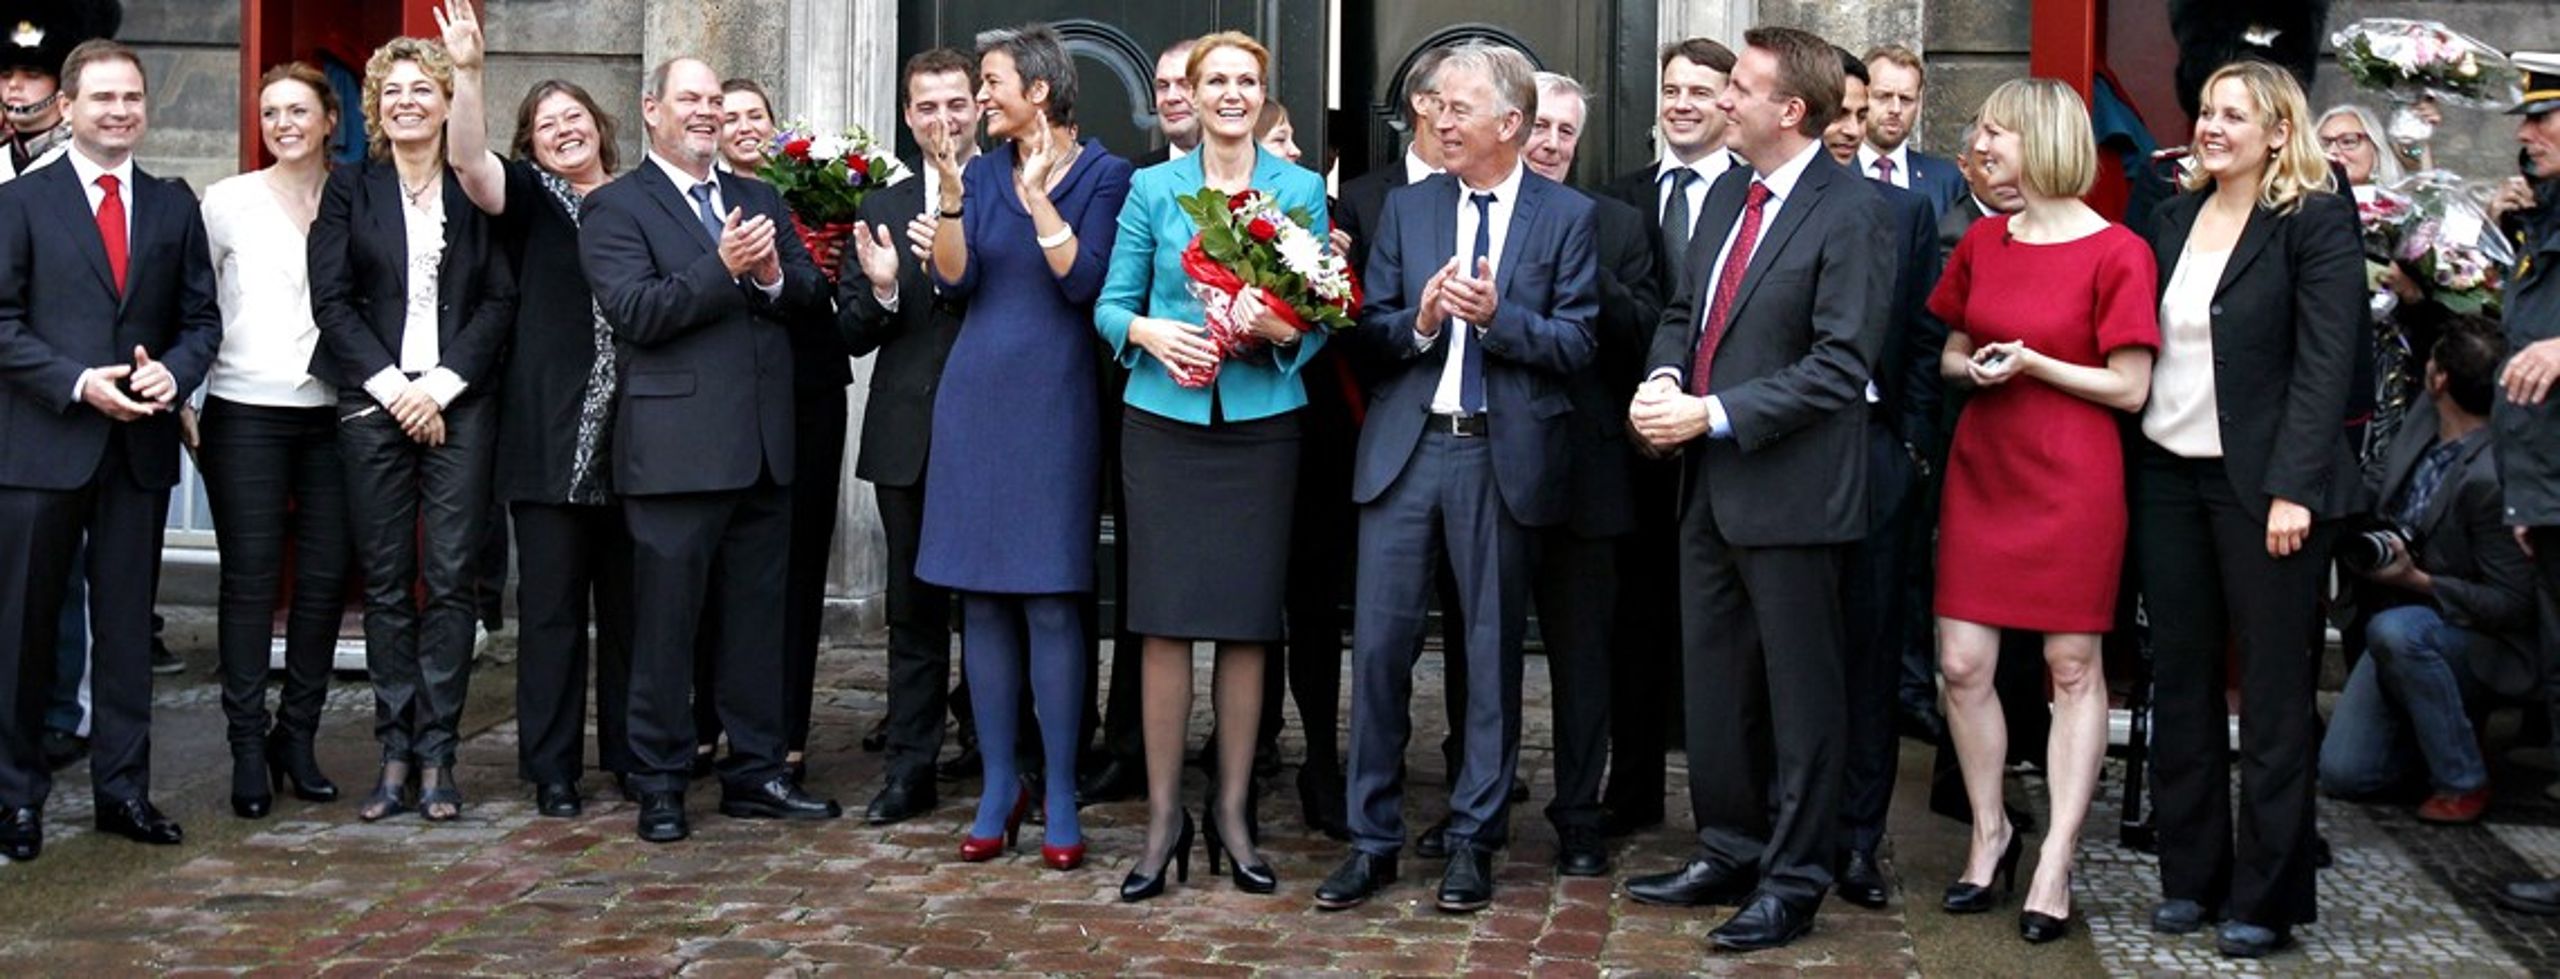 Regeringen som den så ud efter&nbsp;valget. Thorning præsenterede sin nye regering&nbsp;på Amalienborg Slotsplads 3. oktober 2011.&nbsp;<b><br></b>